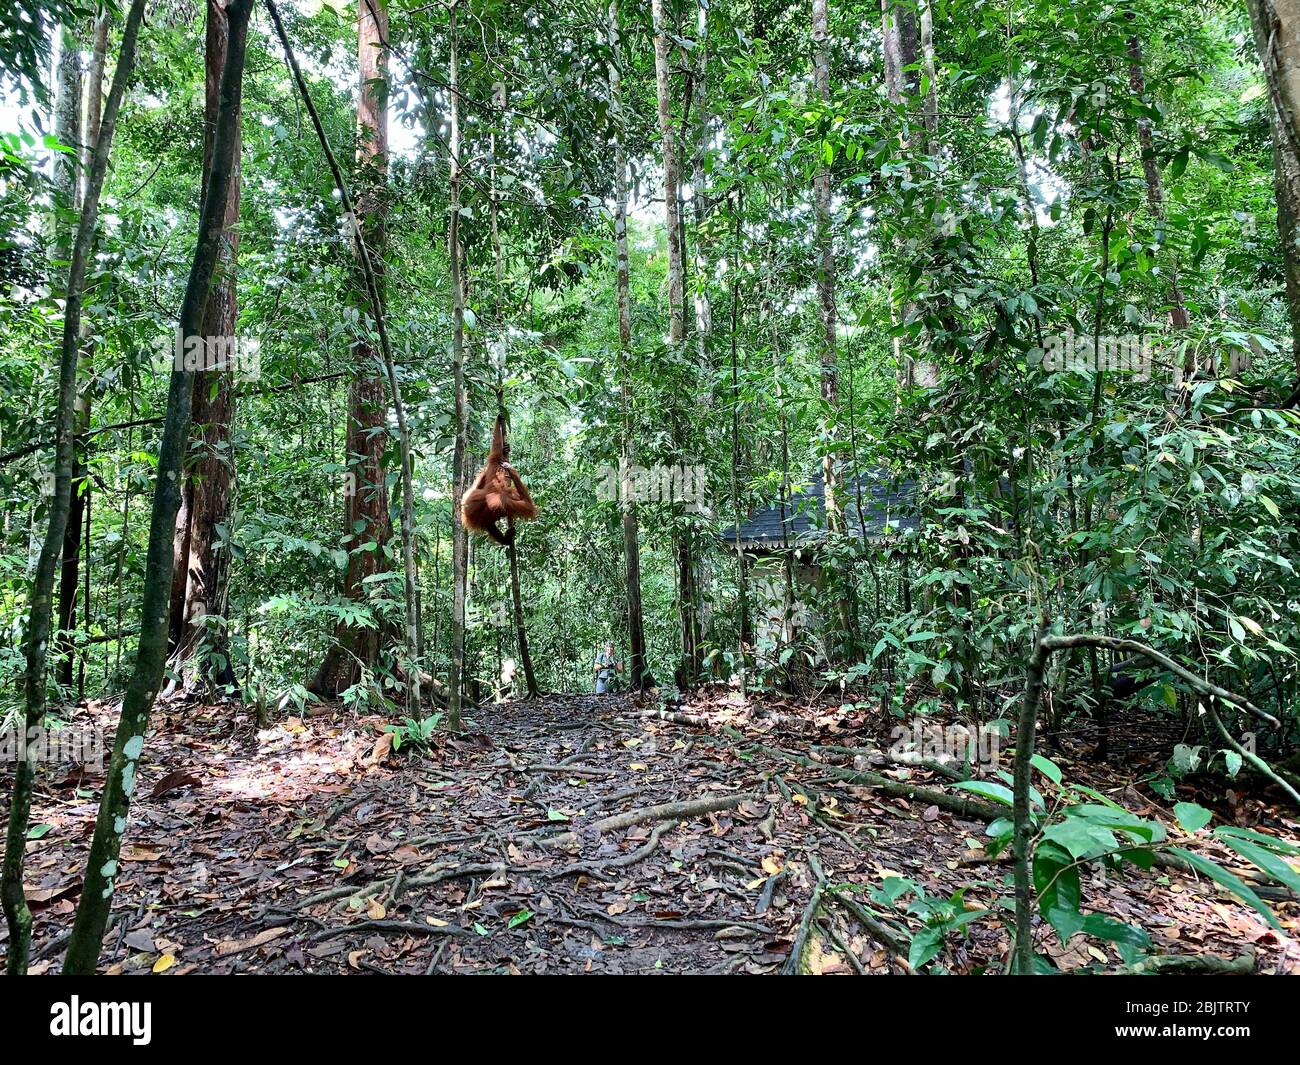 Orangutan Bukit Lawang National Park in Sumatra Stock Photo